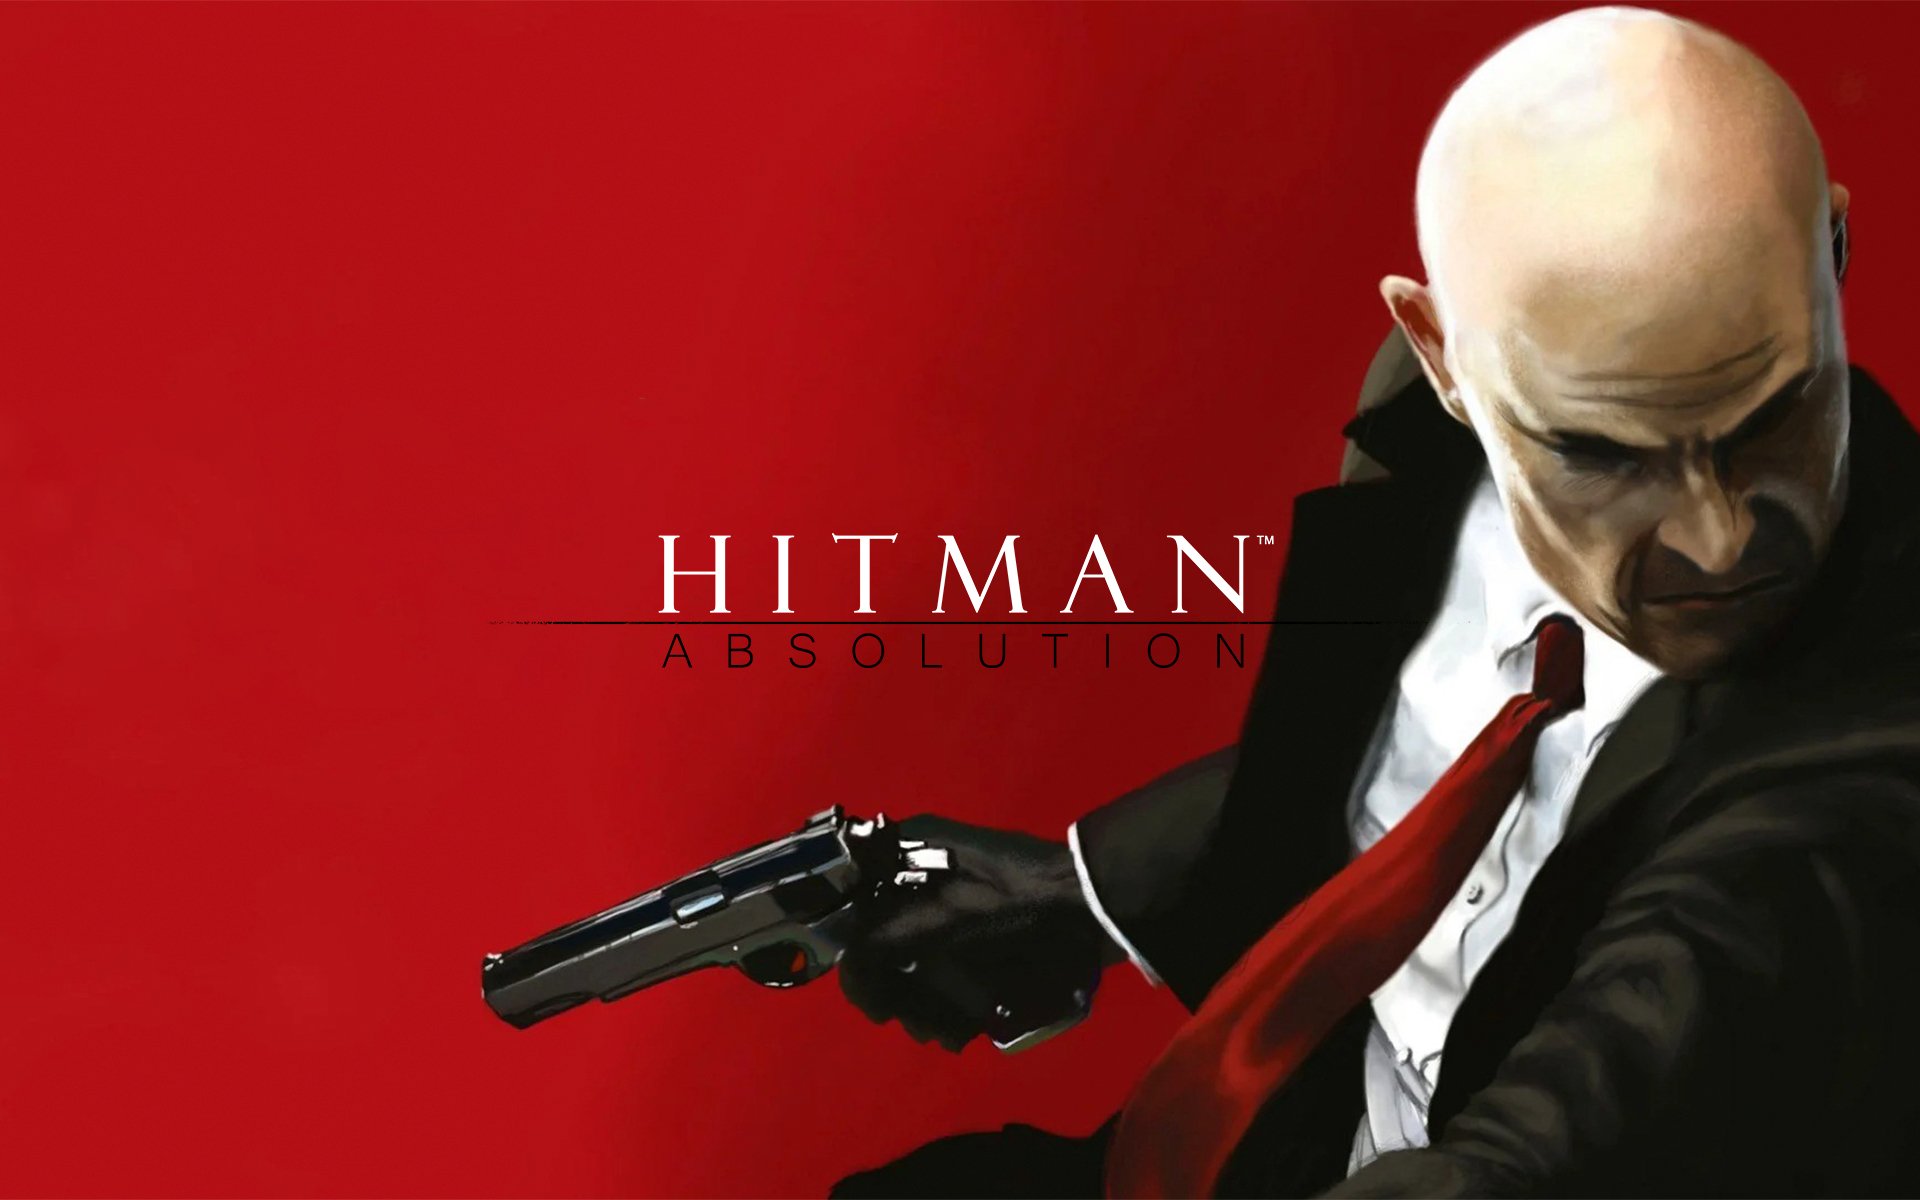 Compre Hitman a partir de R$ 36.99